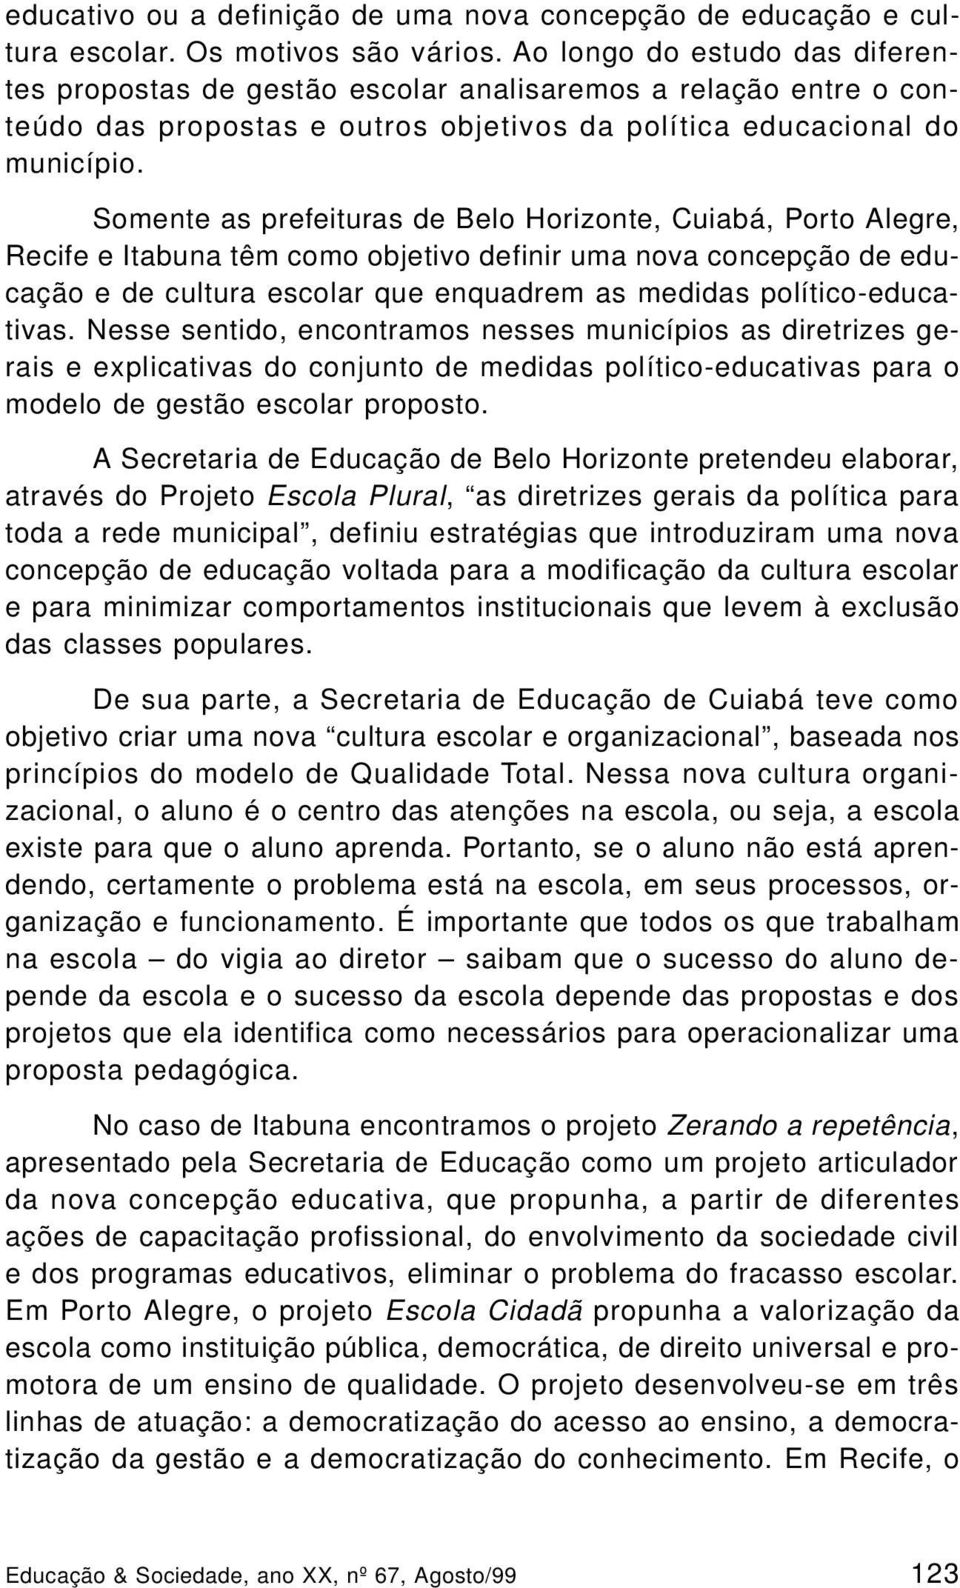 Somente as prefeituras de Belo Horizonte, Cuiabá, Porto Alegre, Recife e Itabuna têm como objetivo definir uma nova concepção de educação e de cultura escolar que enquadrem as medidas